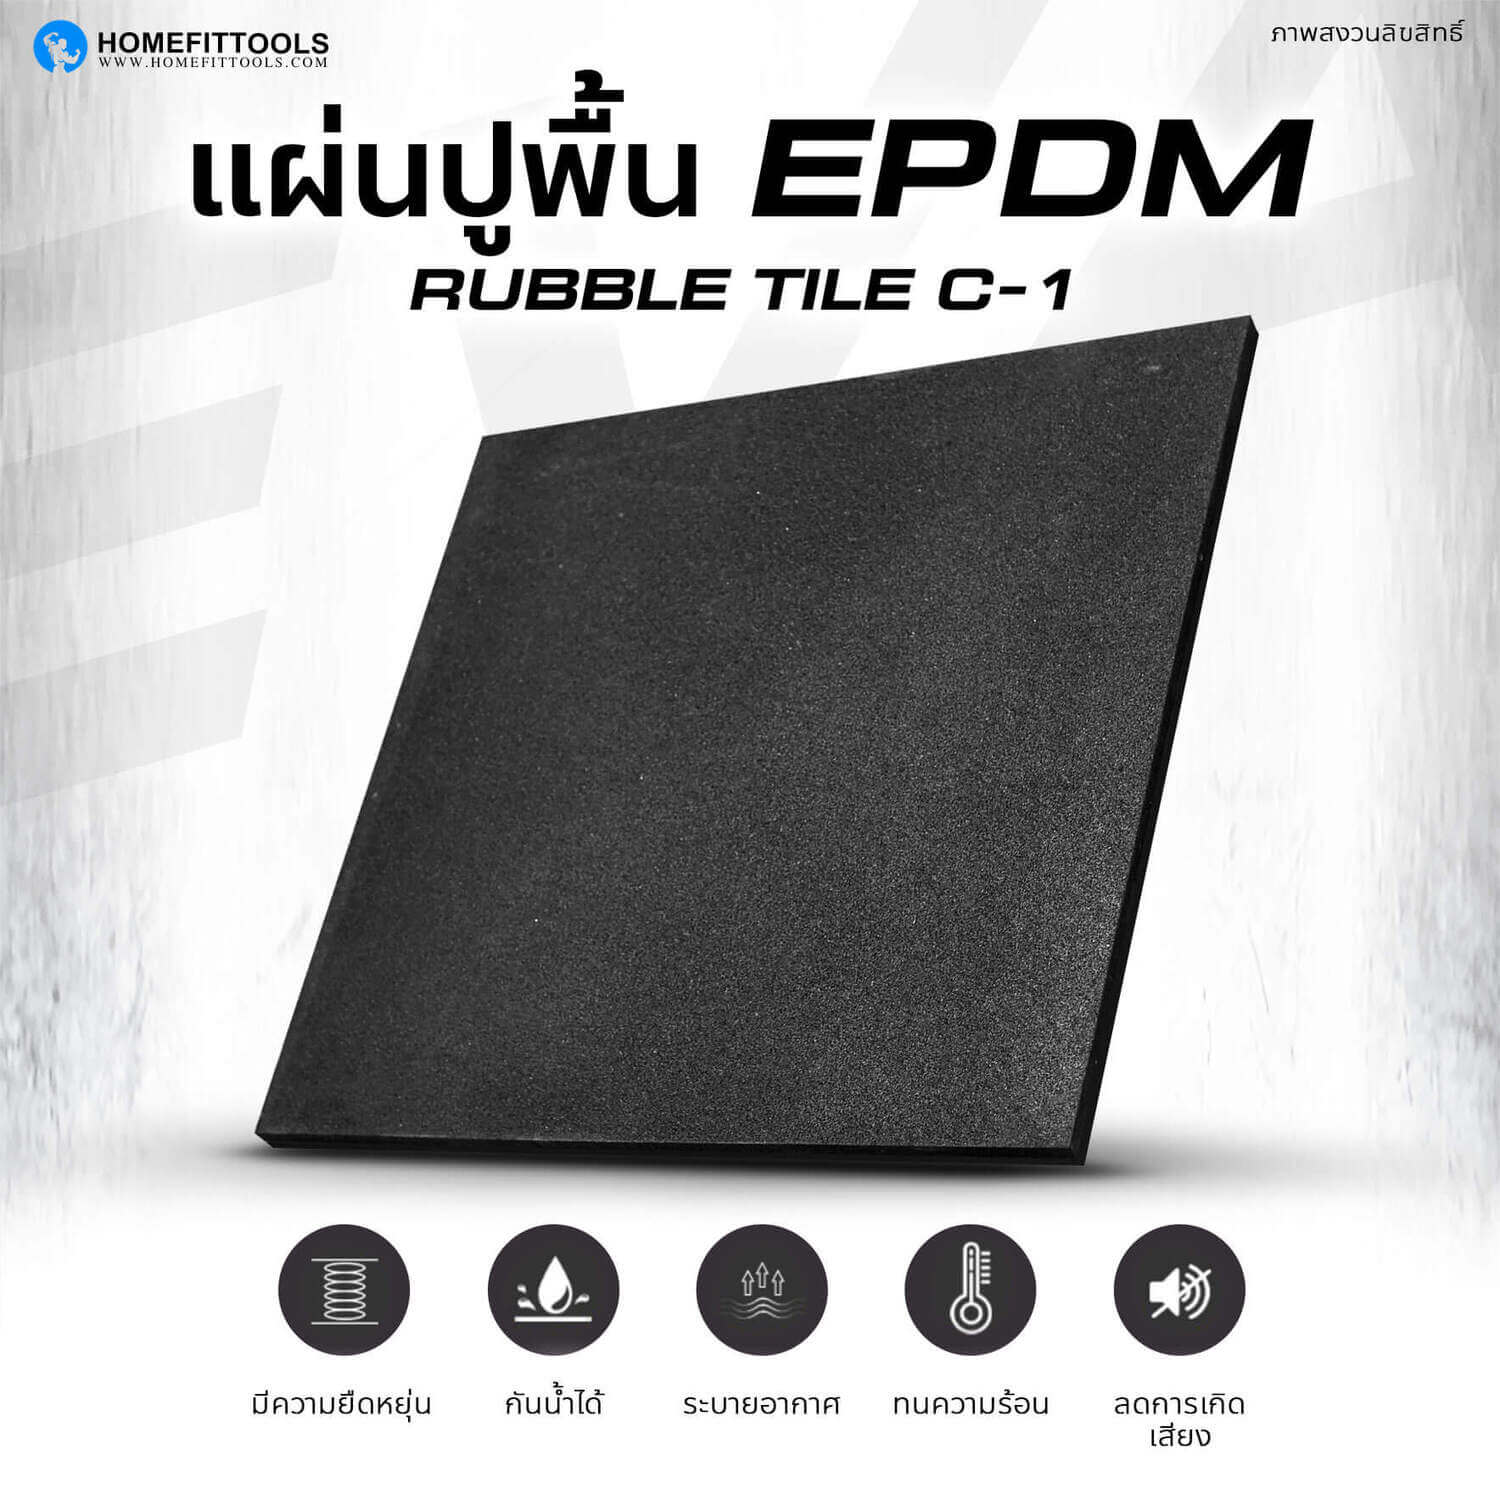 แผ่นยางปูพื้น EPDM Rubber Tile รุ่น C-1